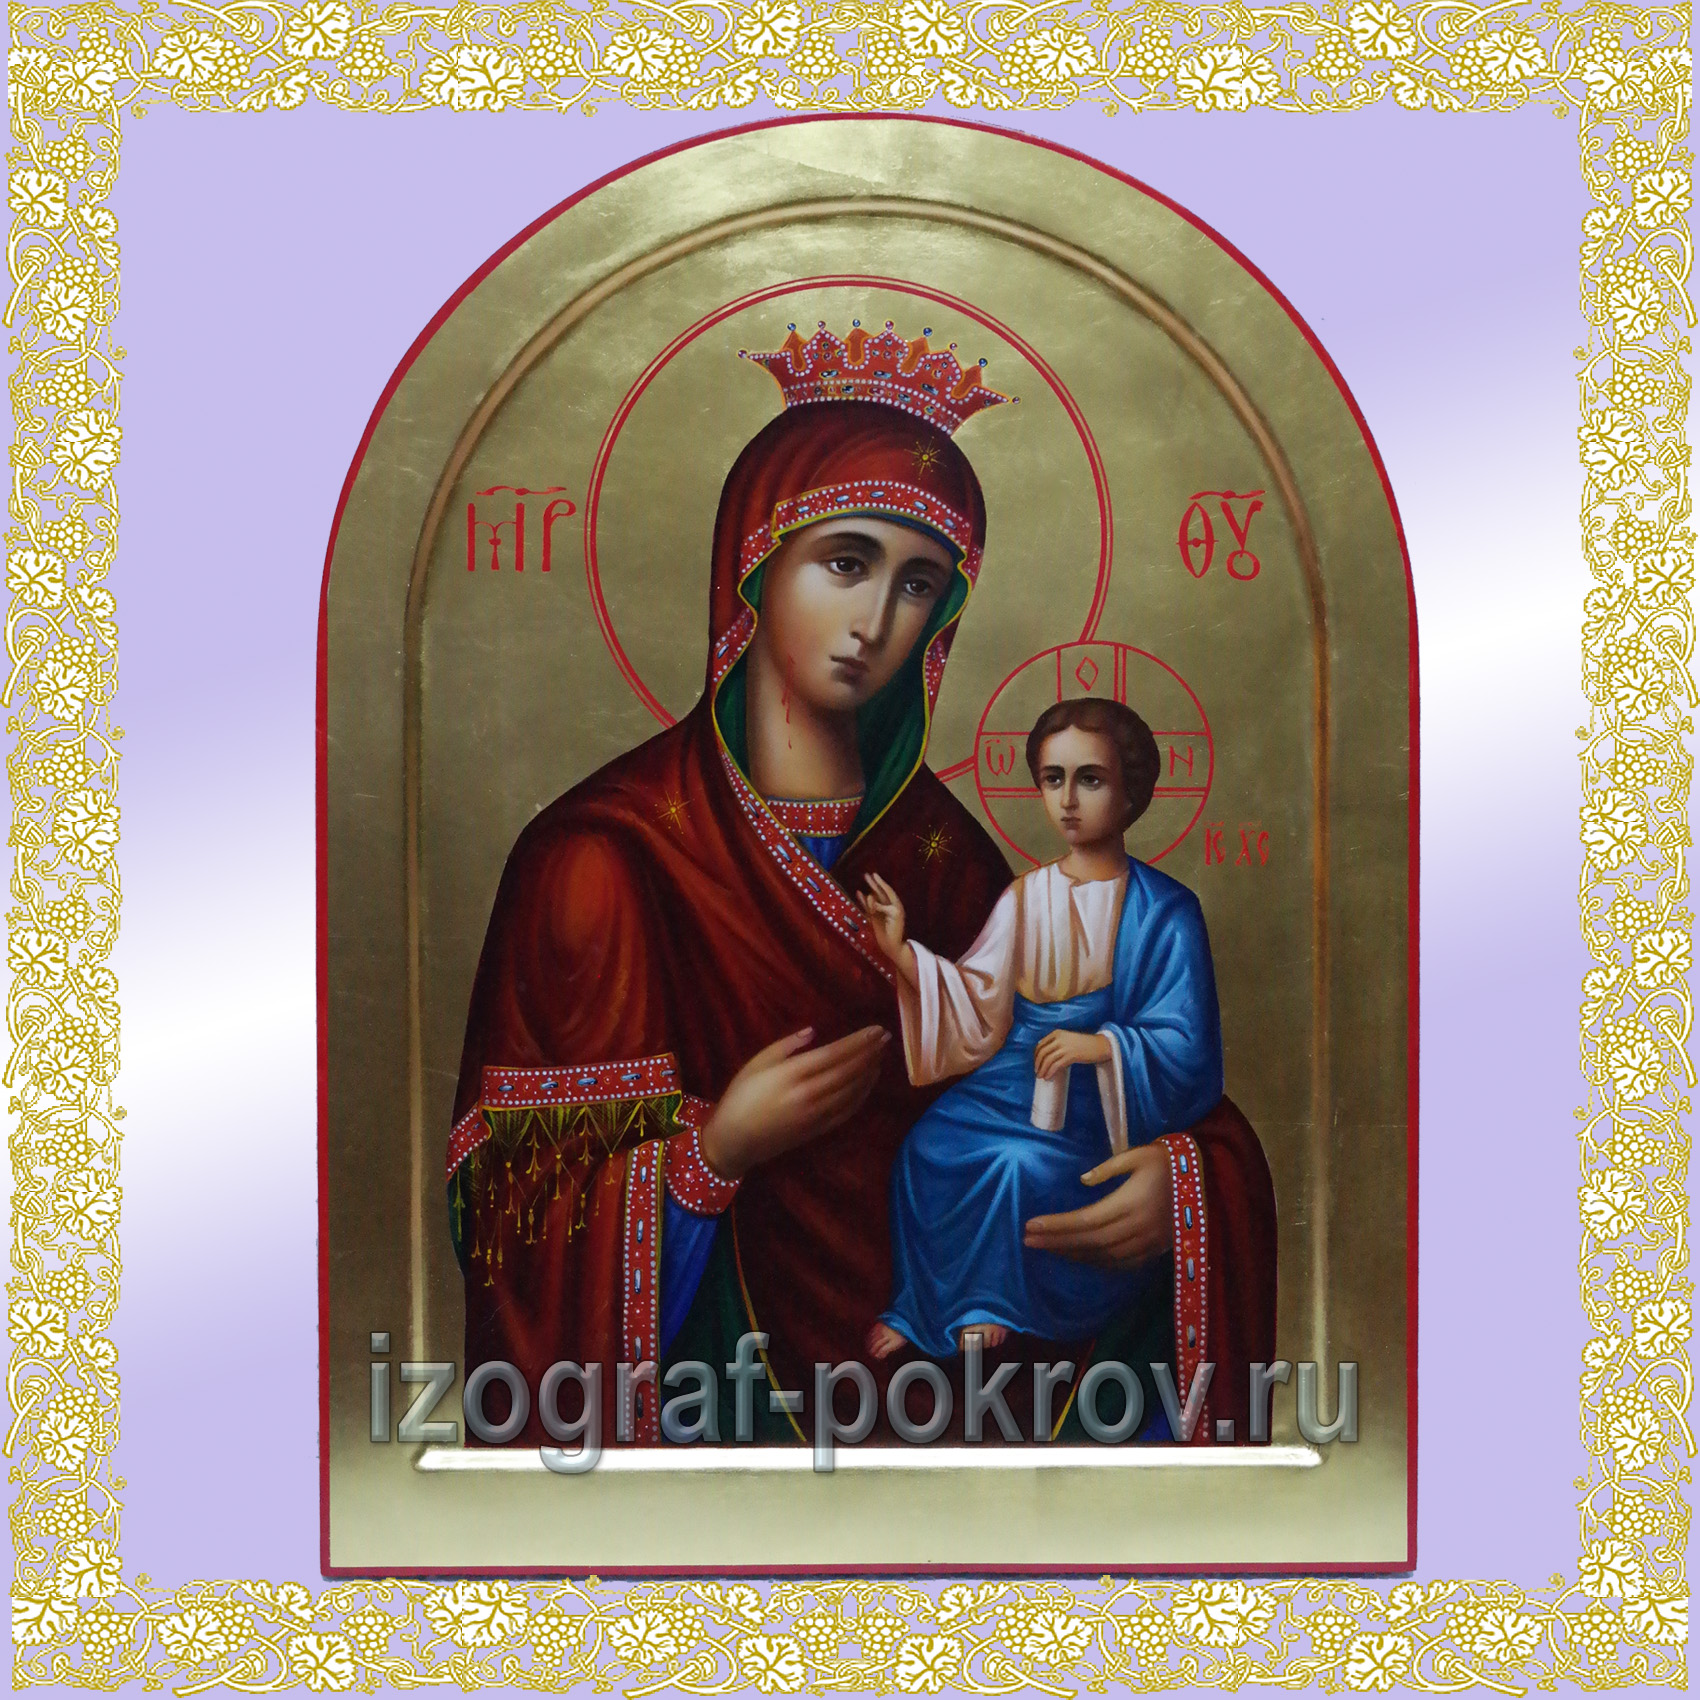 Икона Богородица Иверская арочная на золоте